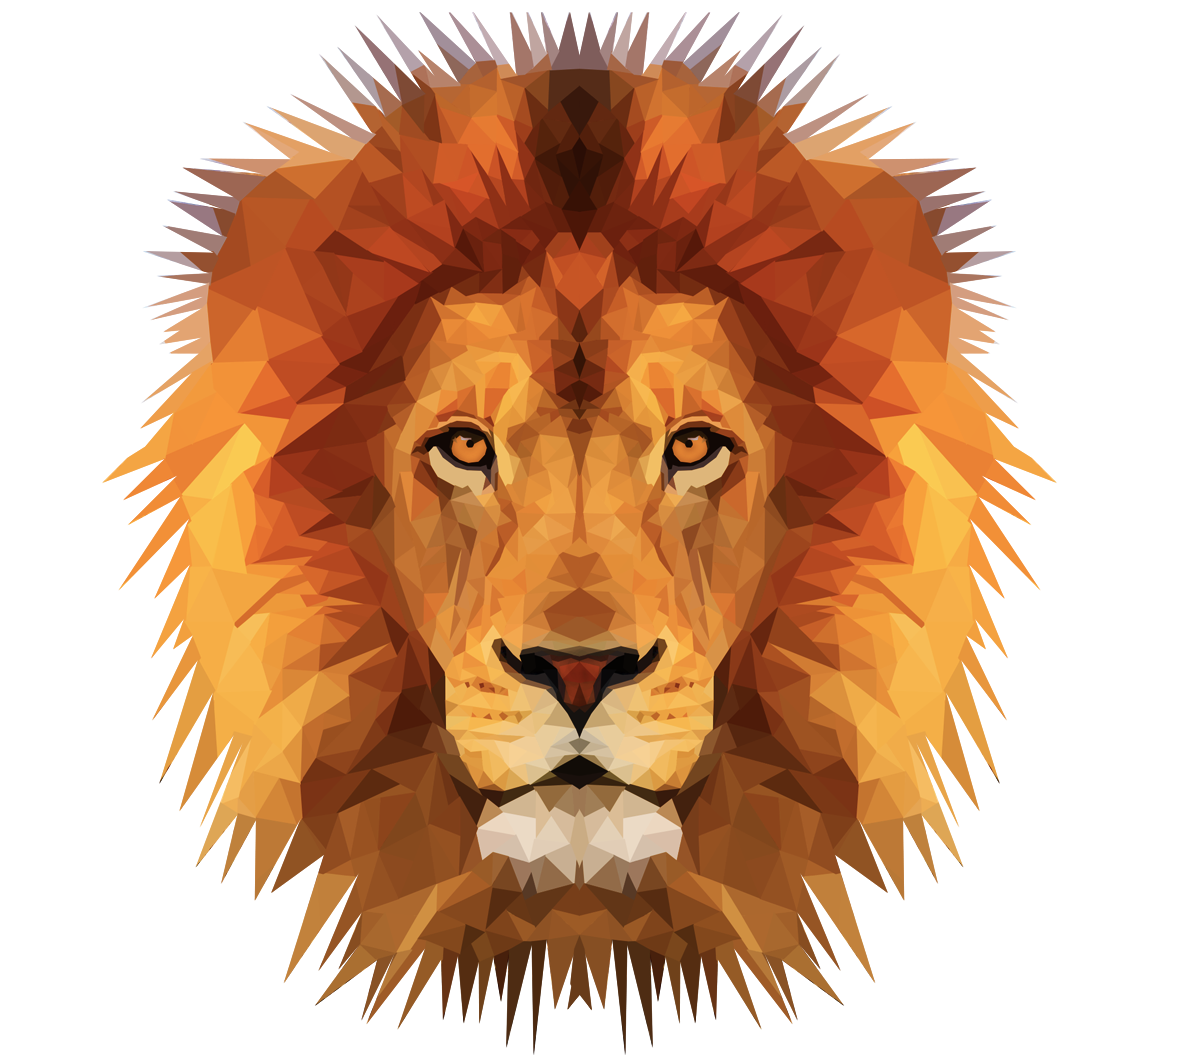 clipart lion courageous